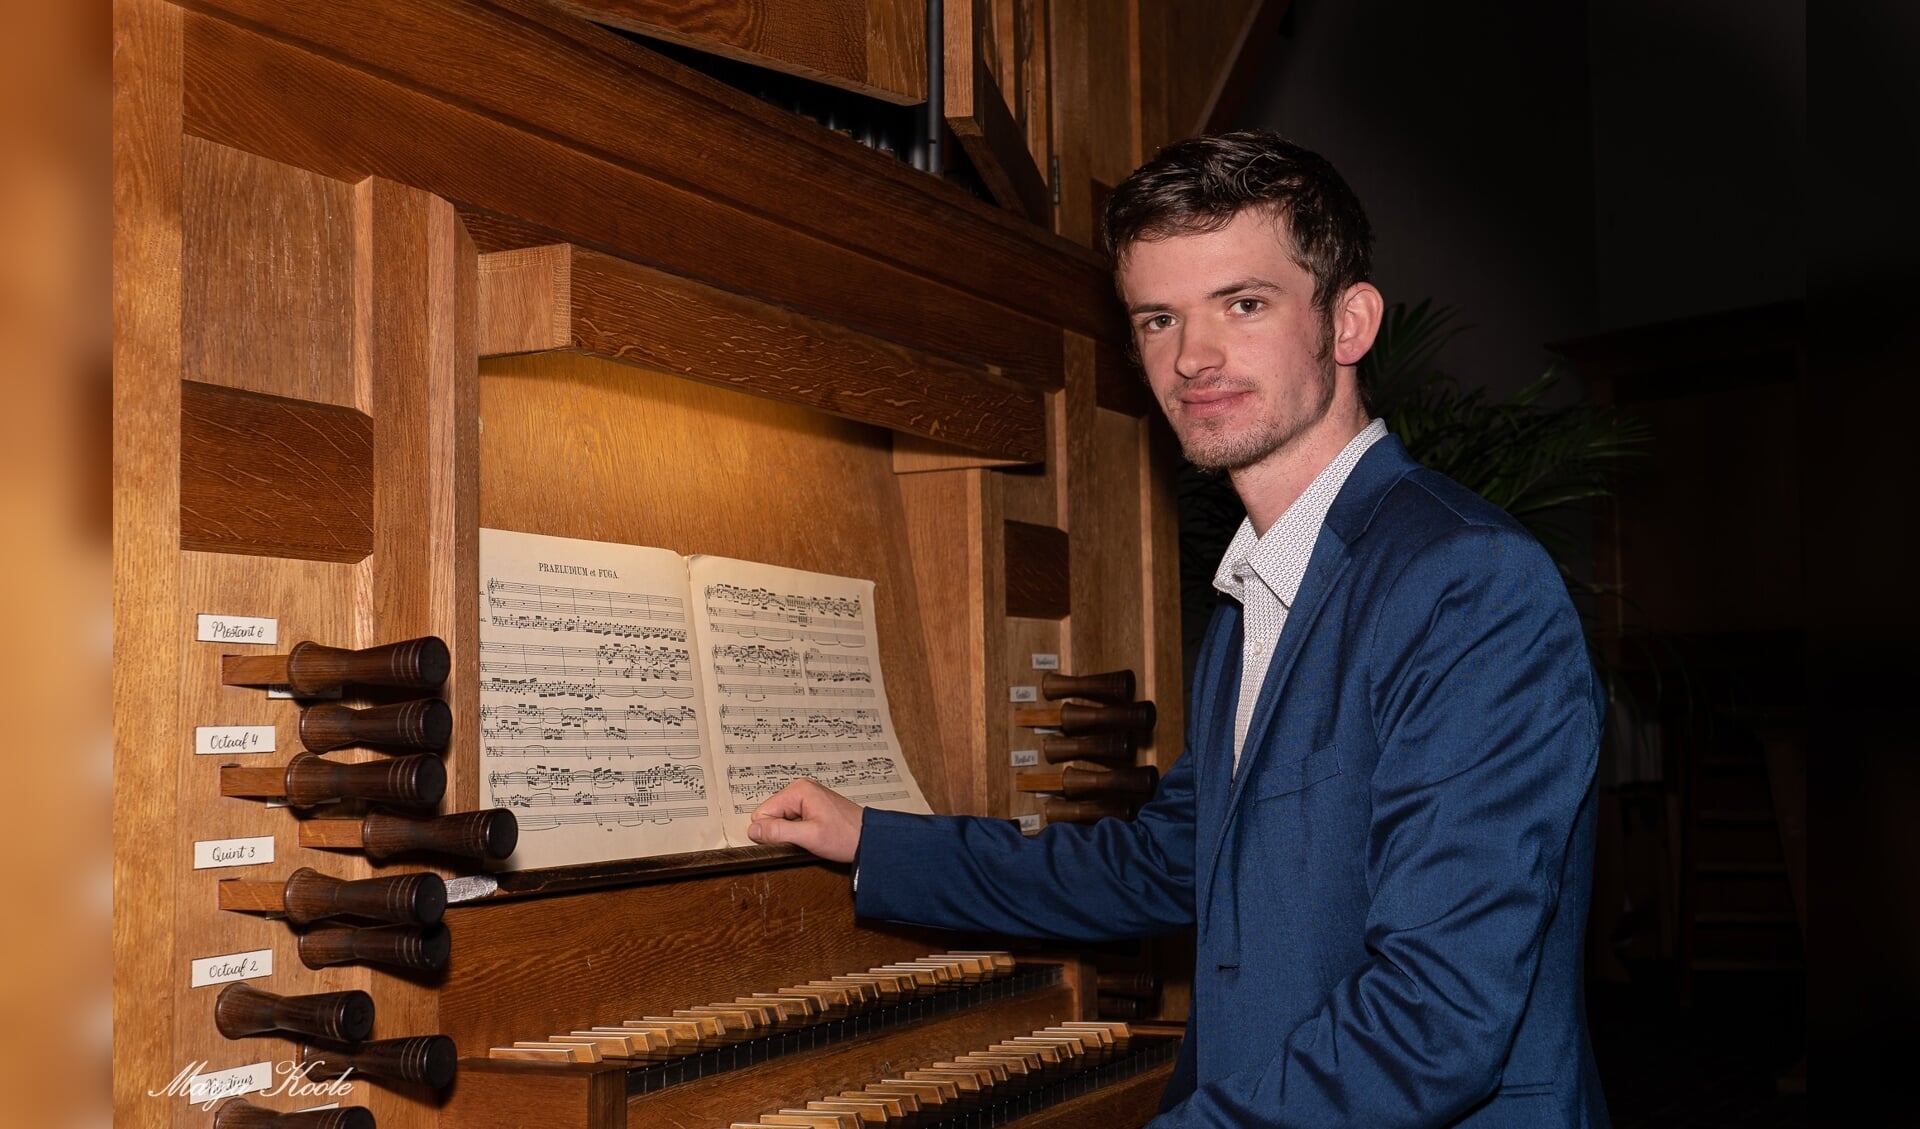 organist Martien de Vos